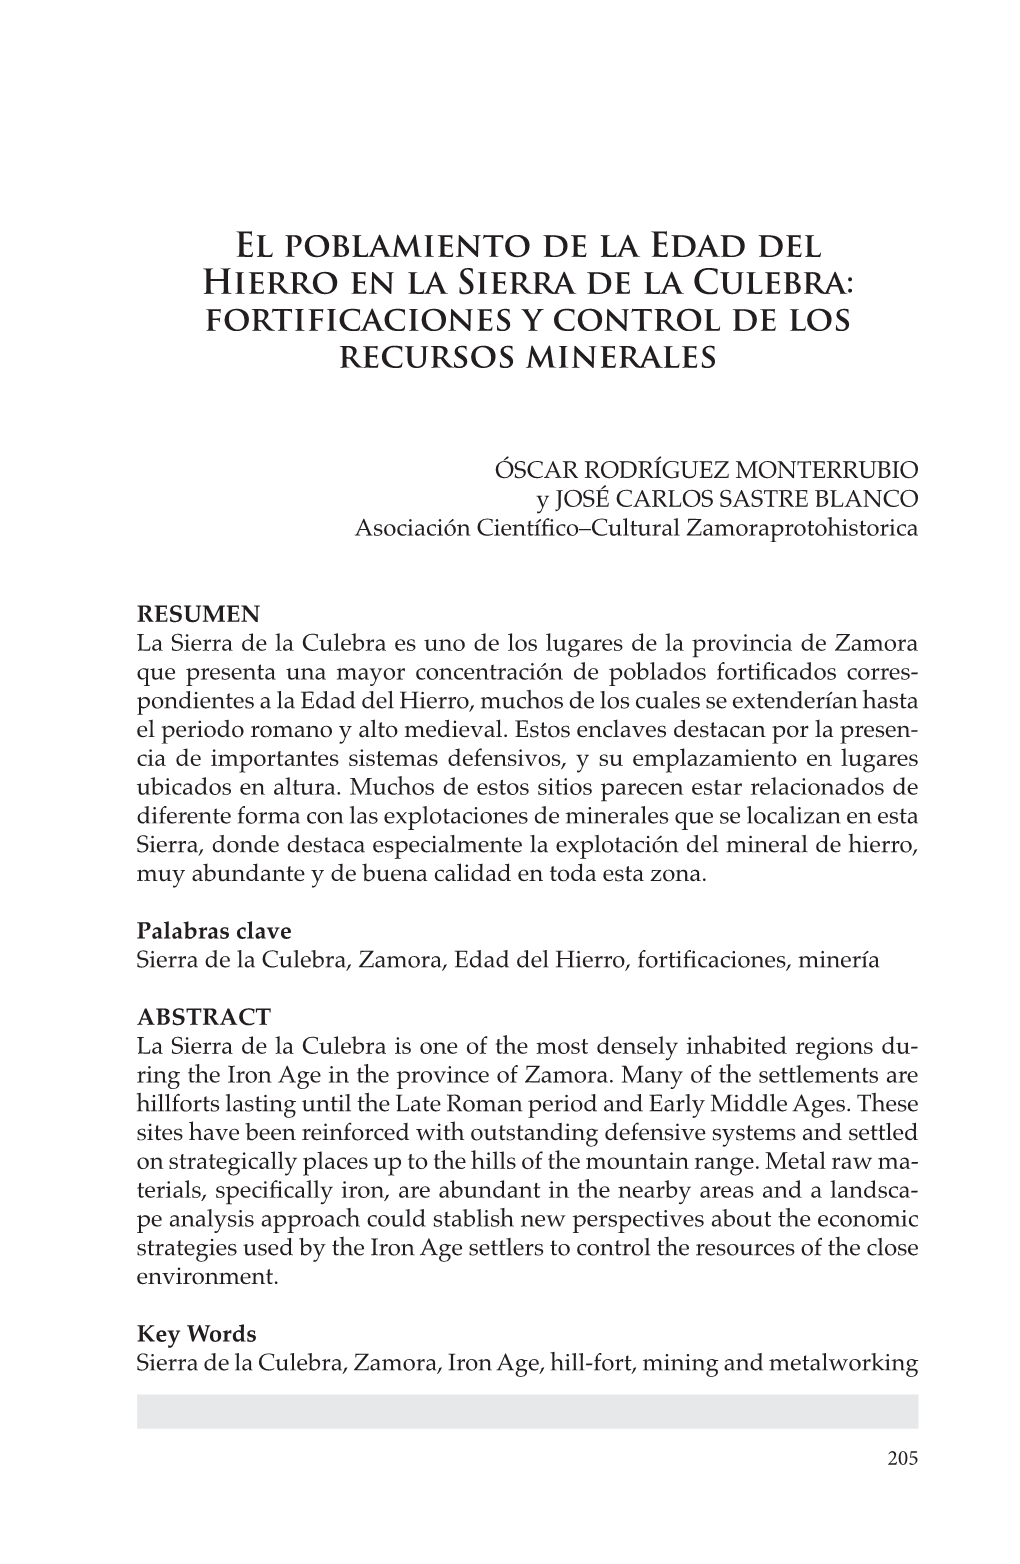 El Poblamiento De La Edad Del Hierro En La Sierra De La Culebra: Fortificaciones Y Control De Los Recursos Minerales